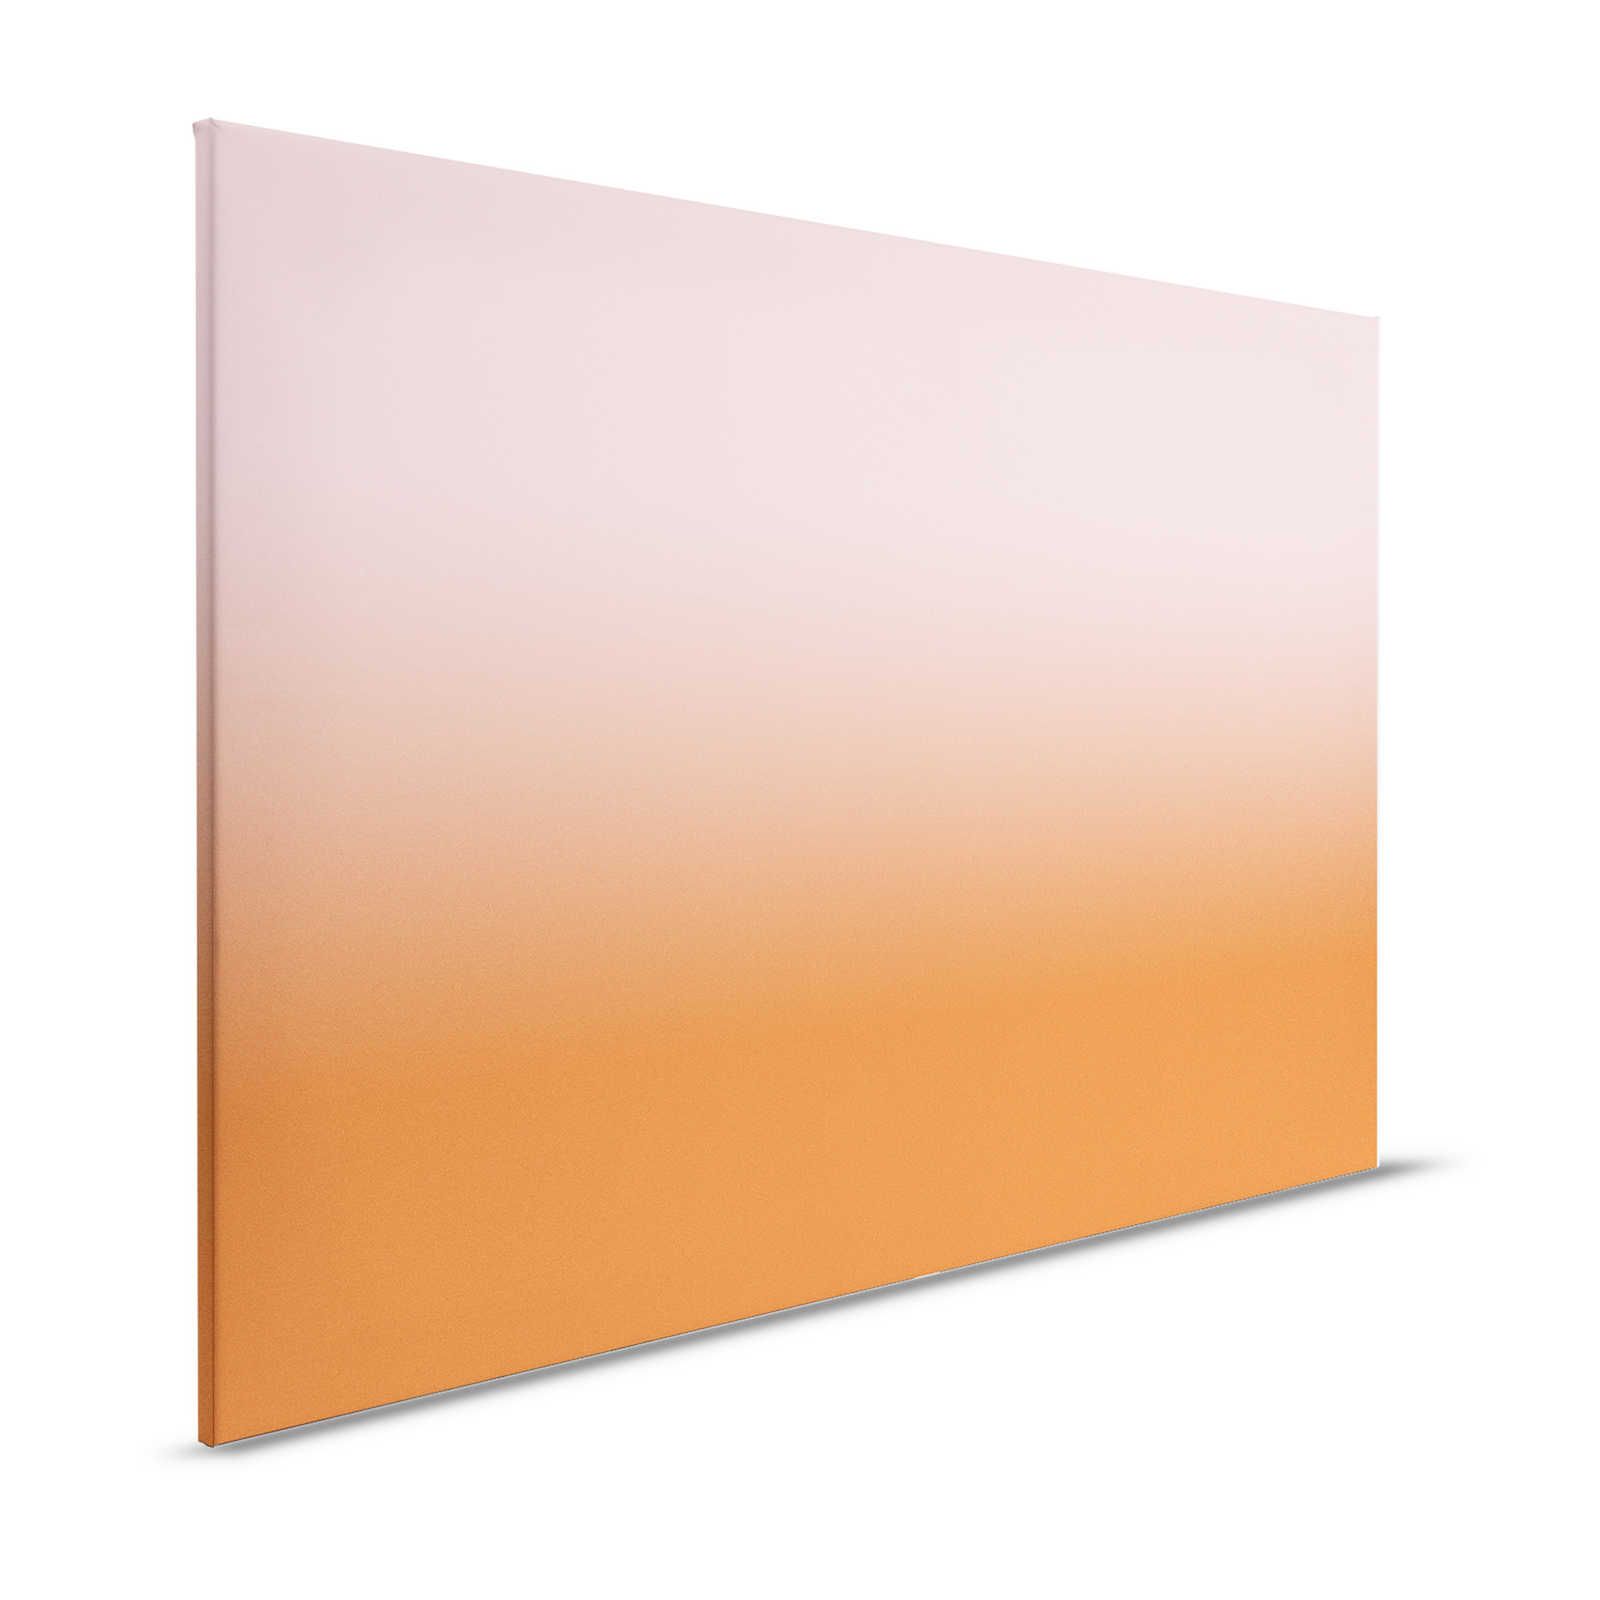             Colour Studio 4 - Pittura su tela Ombre Rosa e Arancione Gradiente - 1,20 m x 0,80 m
        